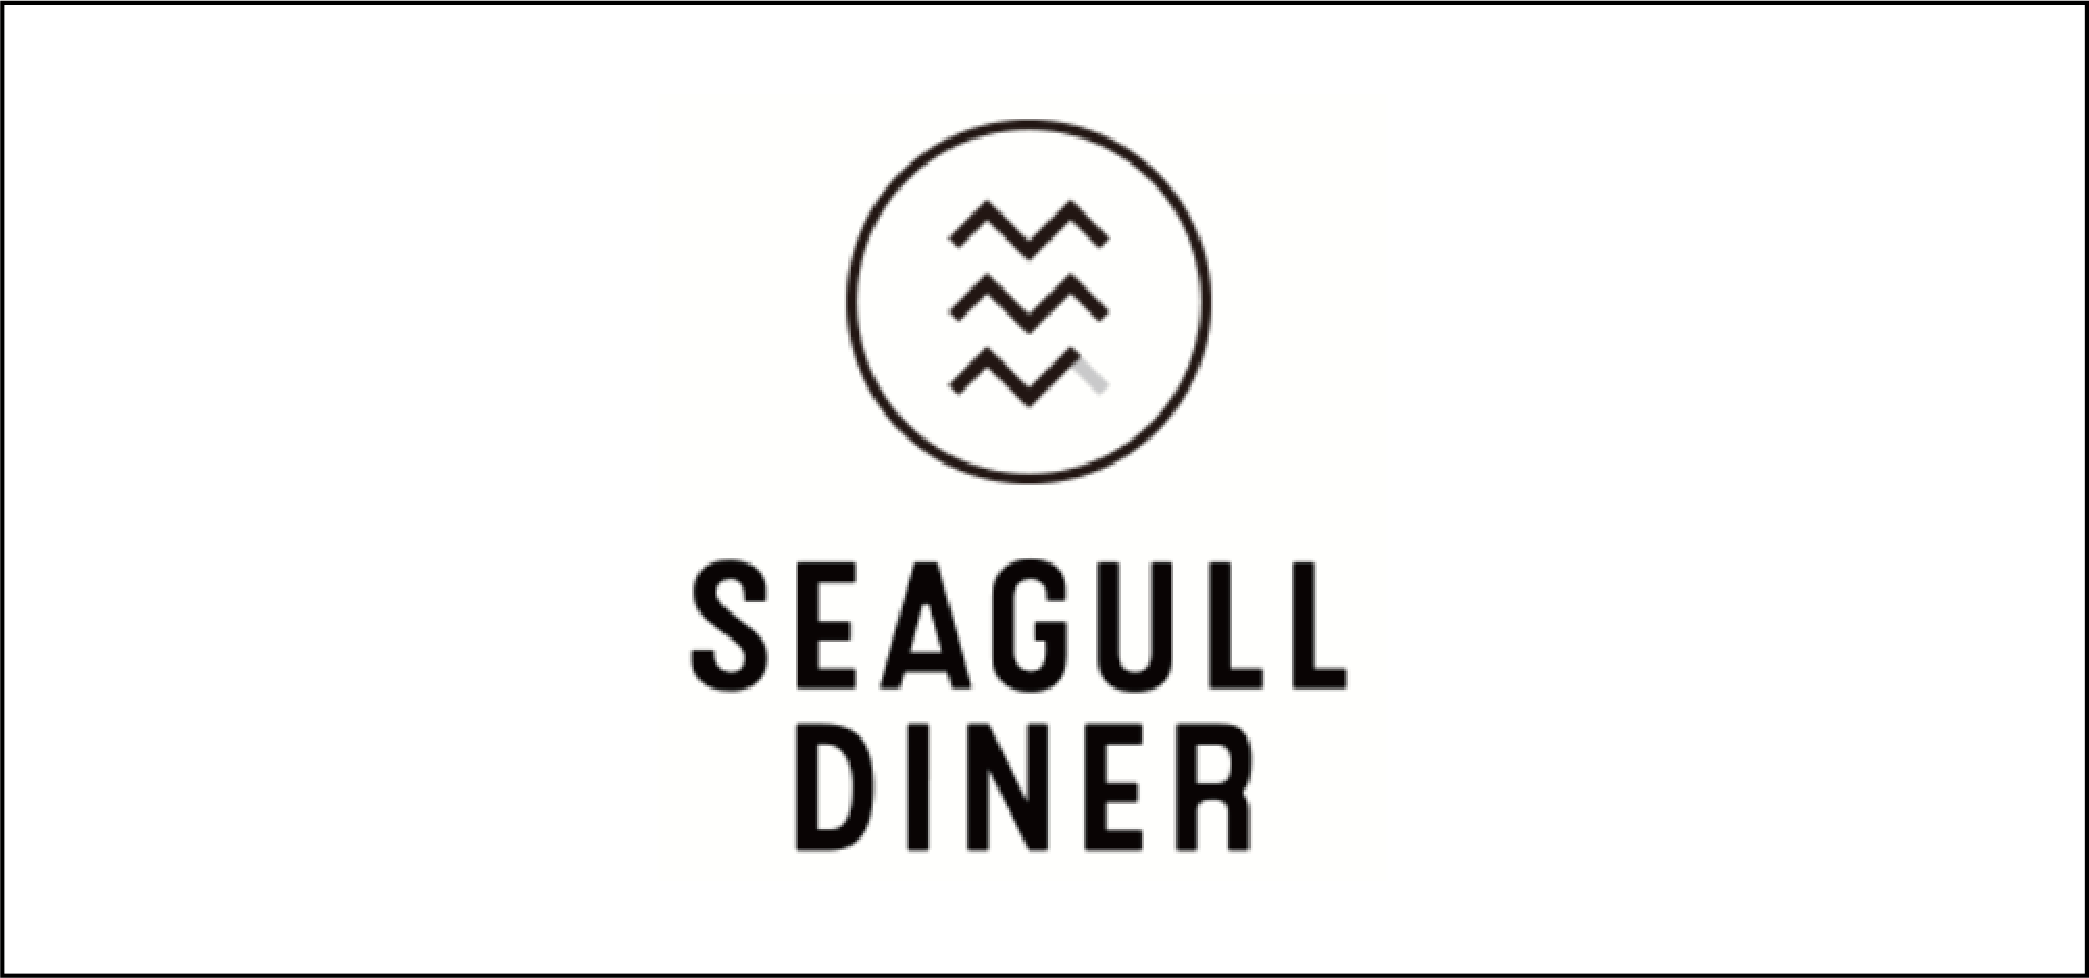 Seagull Diner